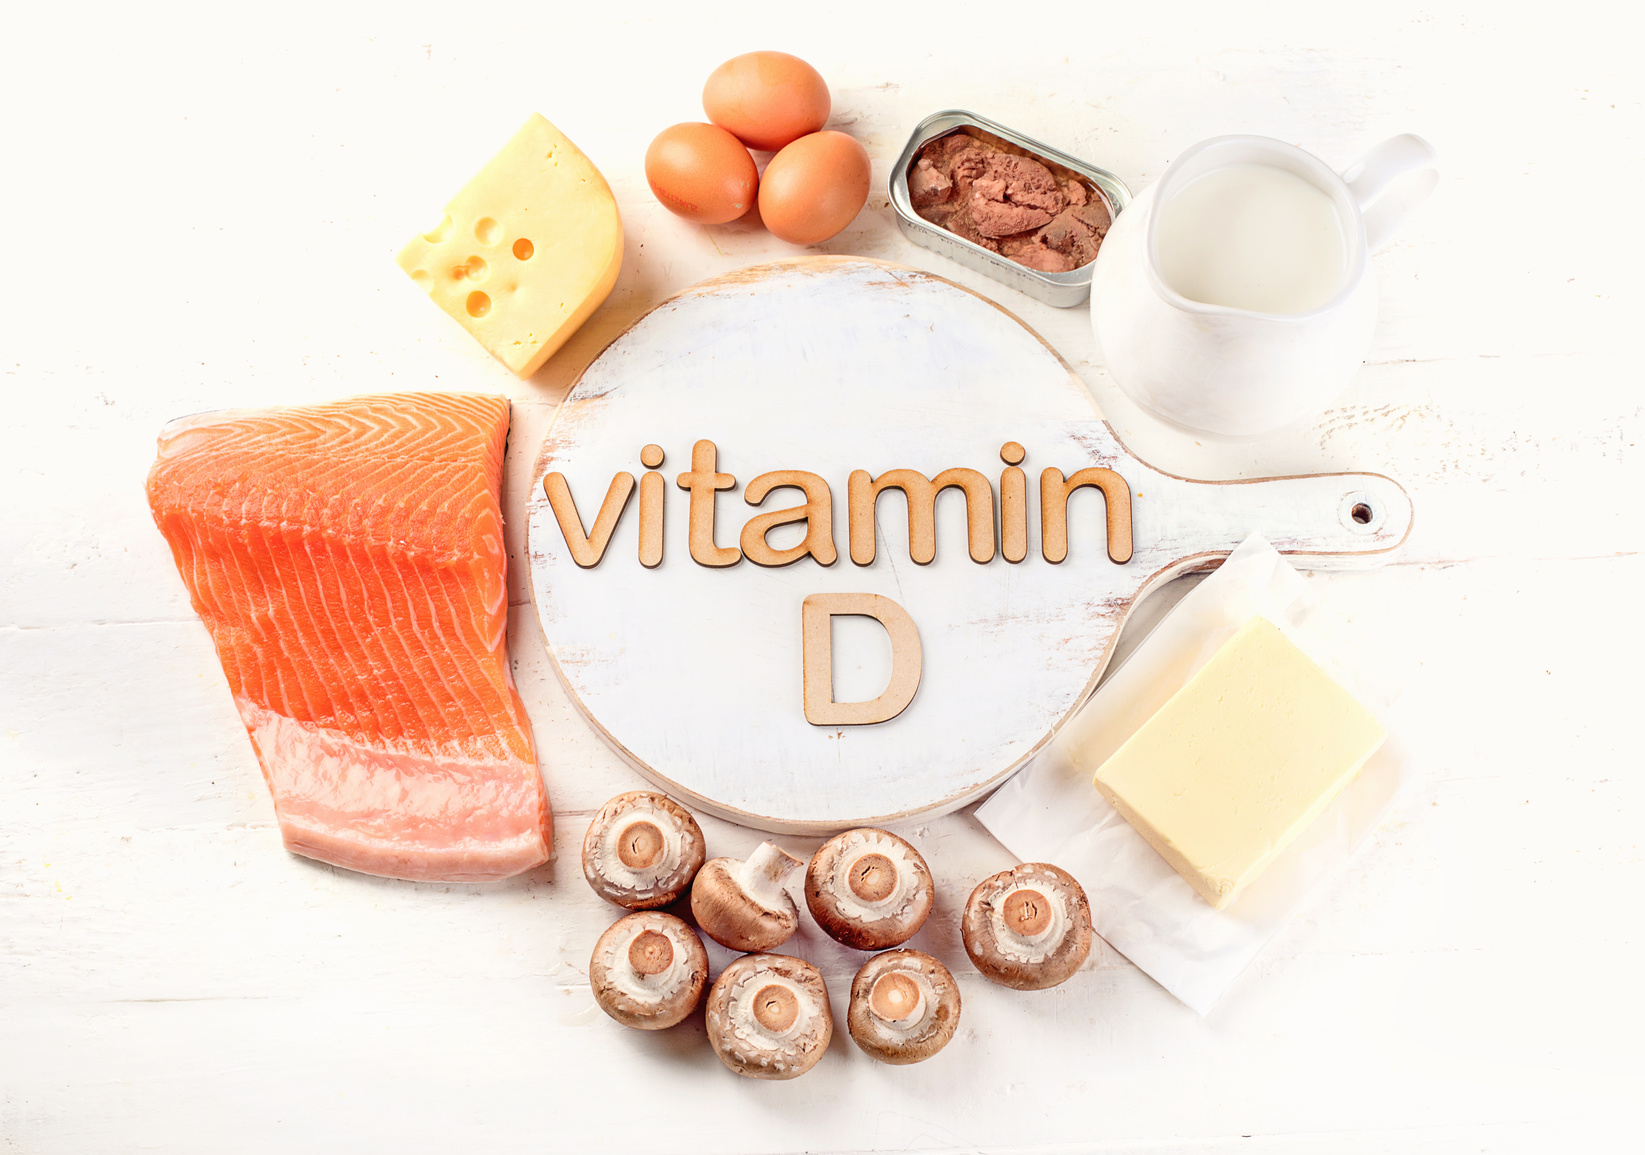 La importancia de la vitamina D para la fertilidad